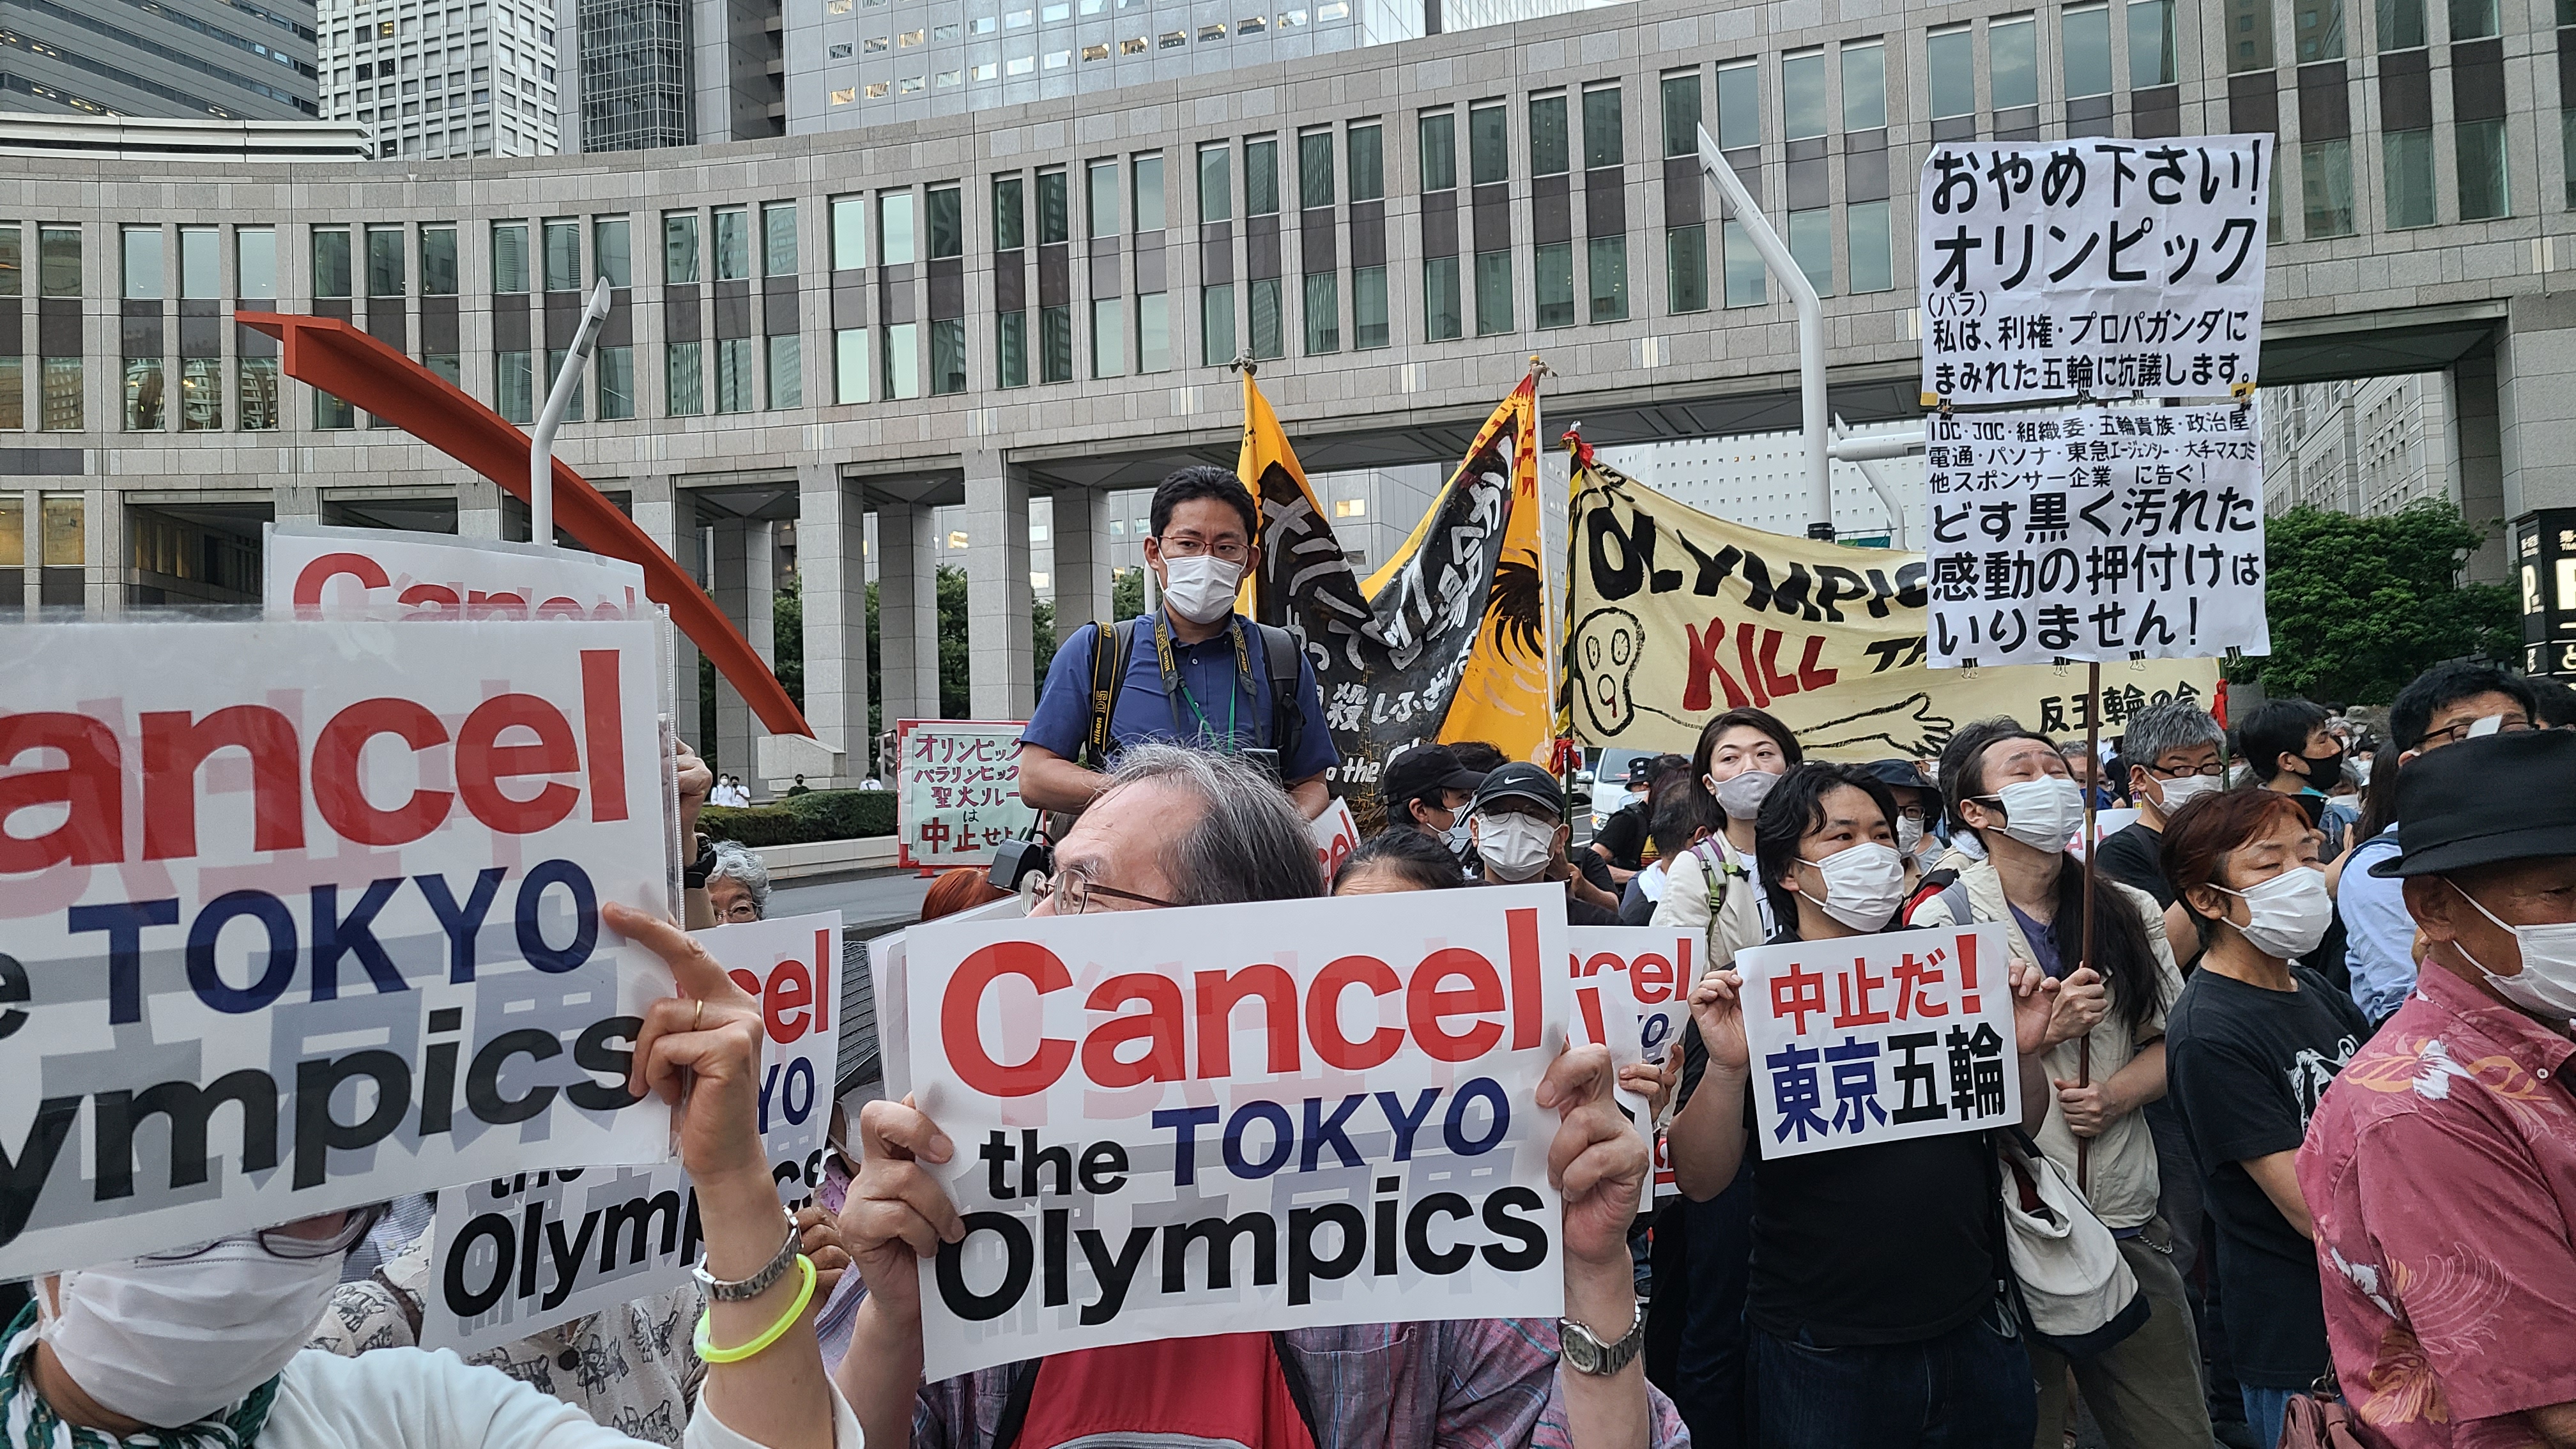 도쿄올림픽 개최를 한 달 앞둔 6월 23일 도쿄도청 앞에서 올림픽 반대 시위를 하고 있는 일본 시민들.  도쿄 박원기 특파원 촬영